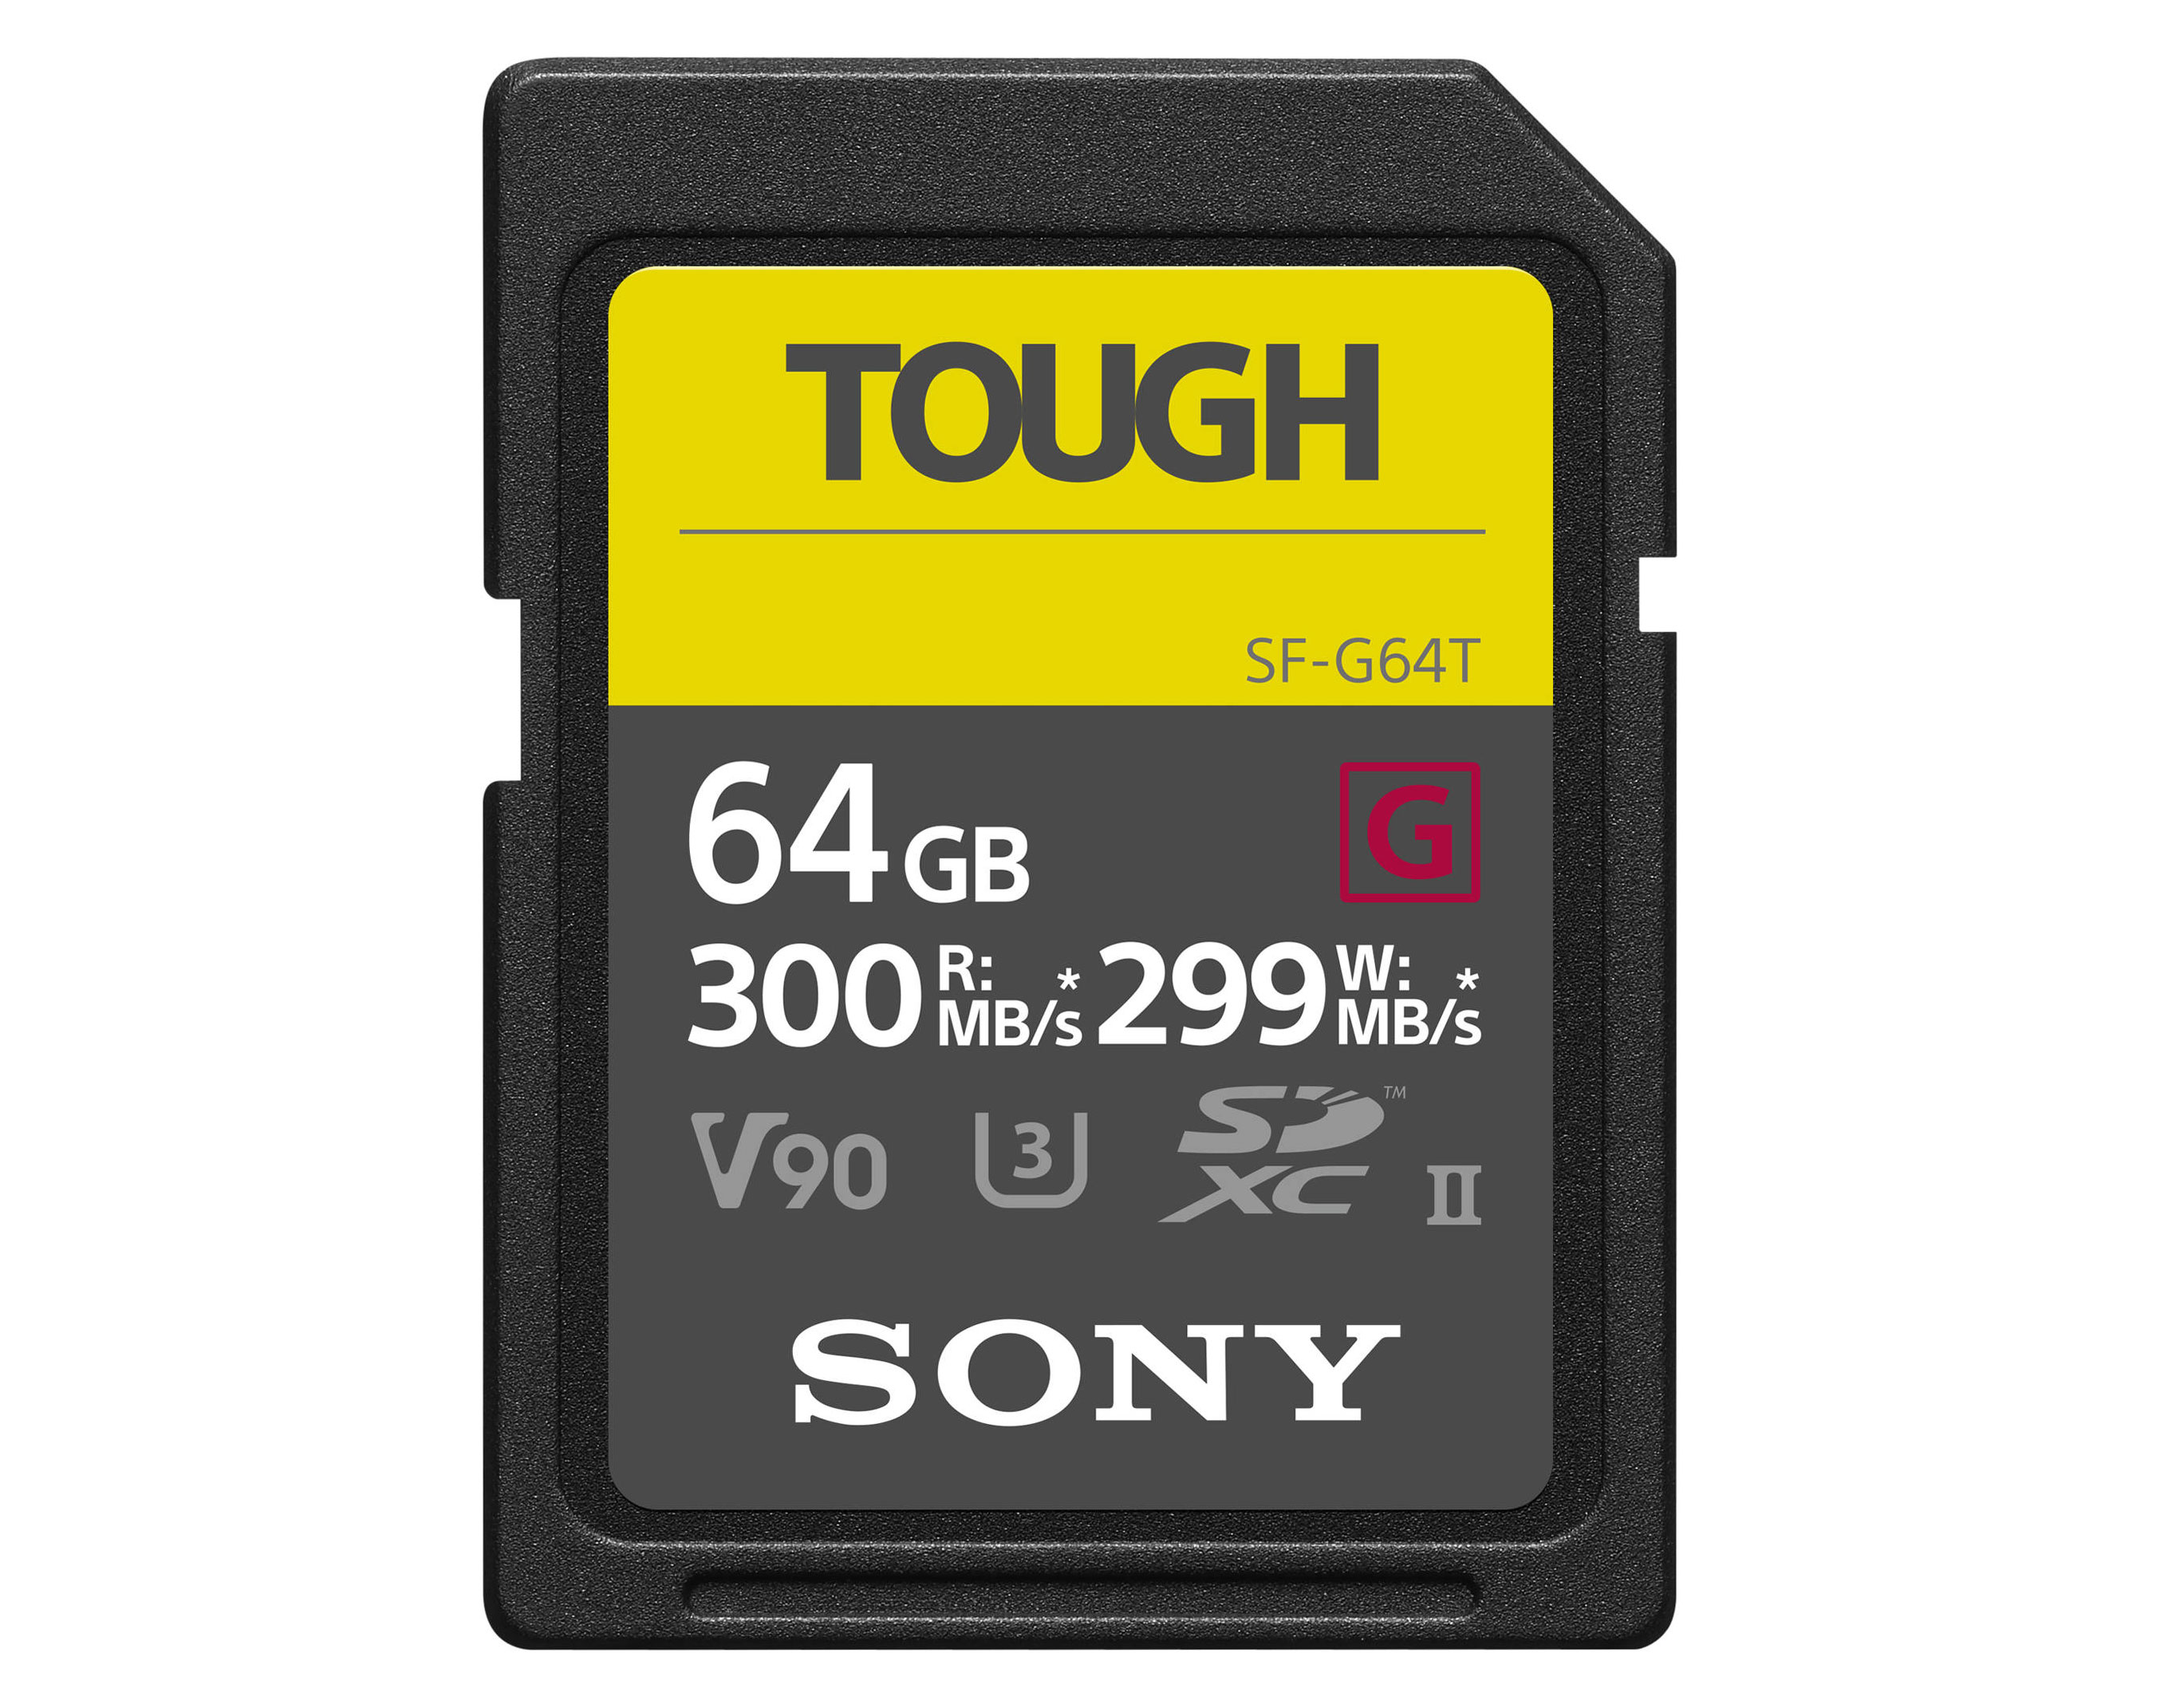 Sony SDXC Tough G 64GB